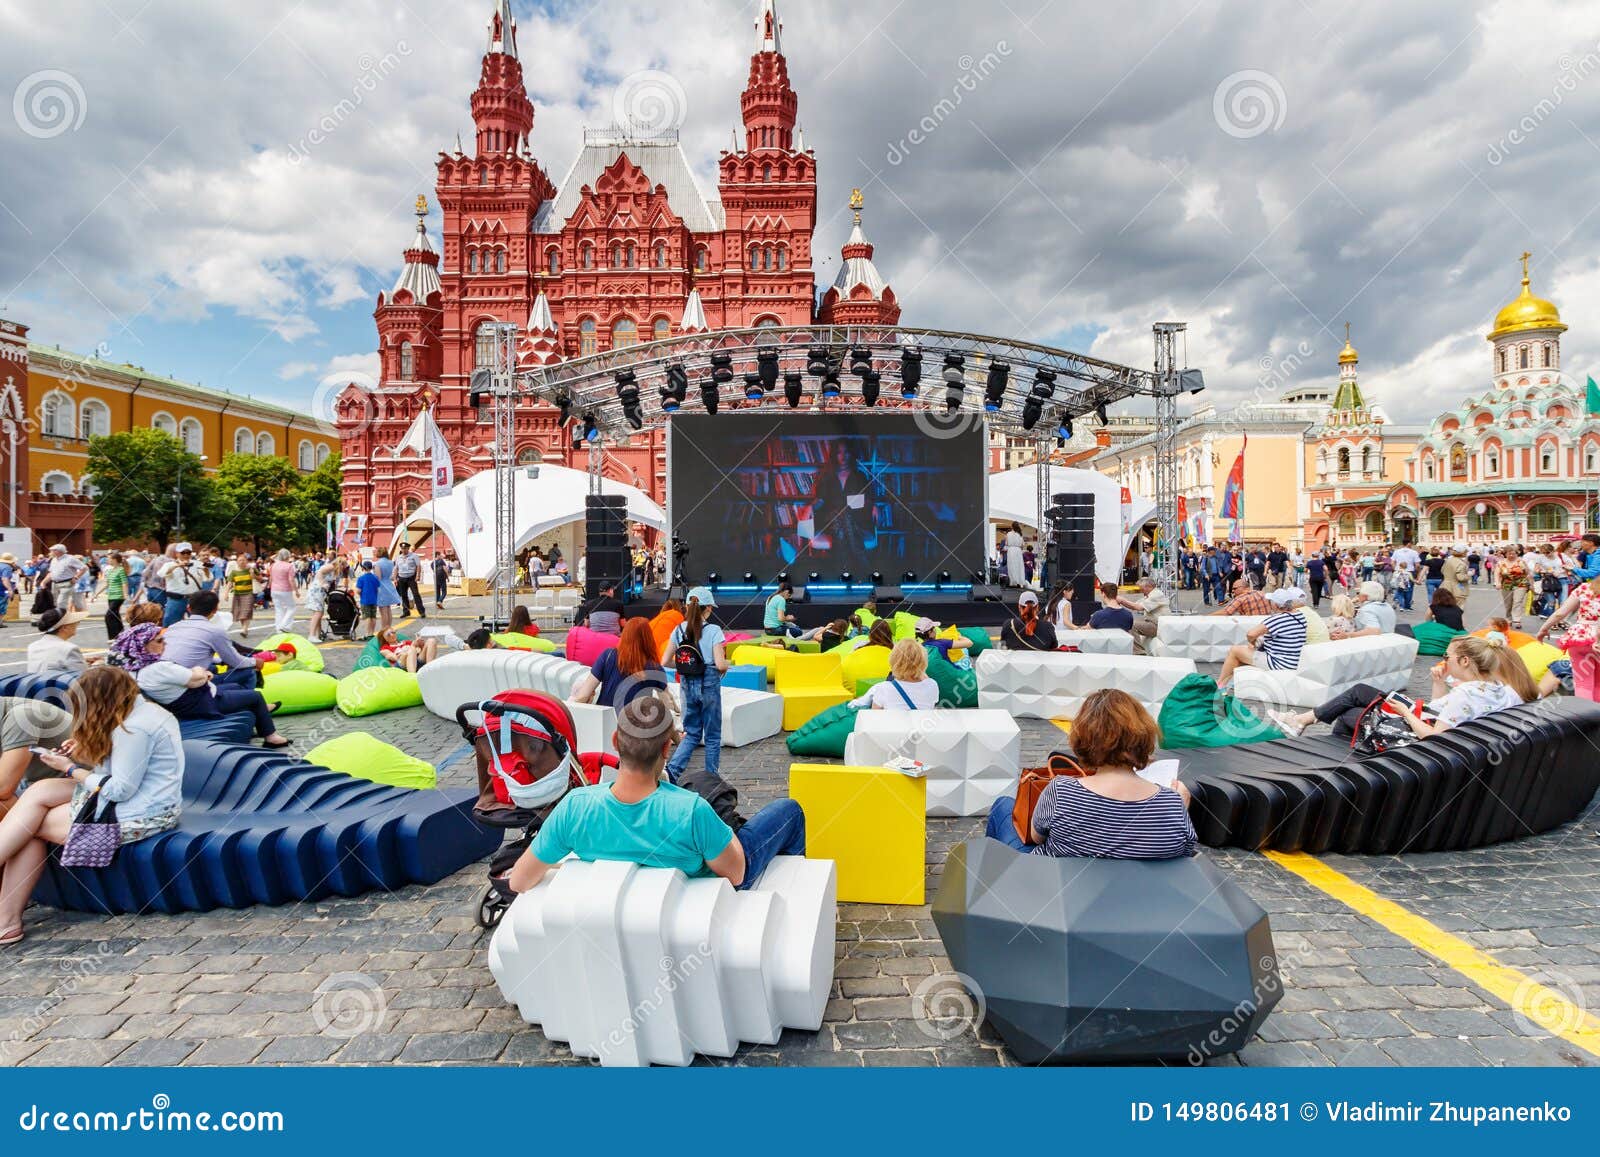 Сцена на красной площади. Фестиваль красная площадь. Сцена на красной площади в Москве. Люди на красной площади.